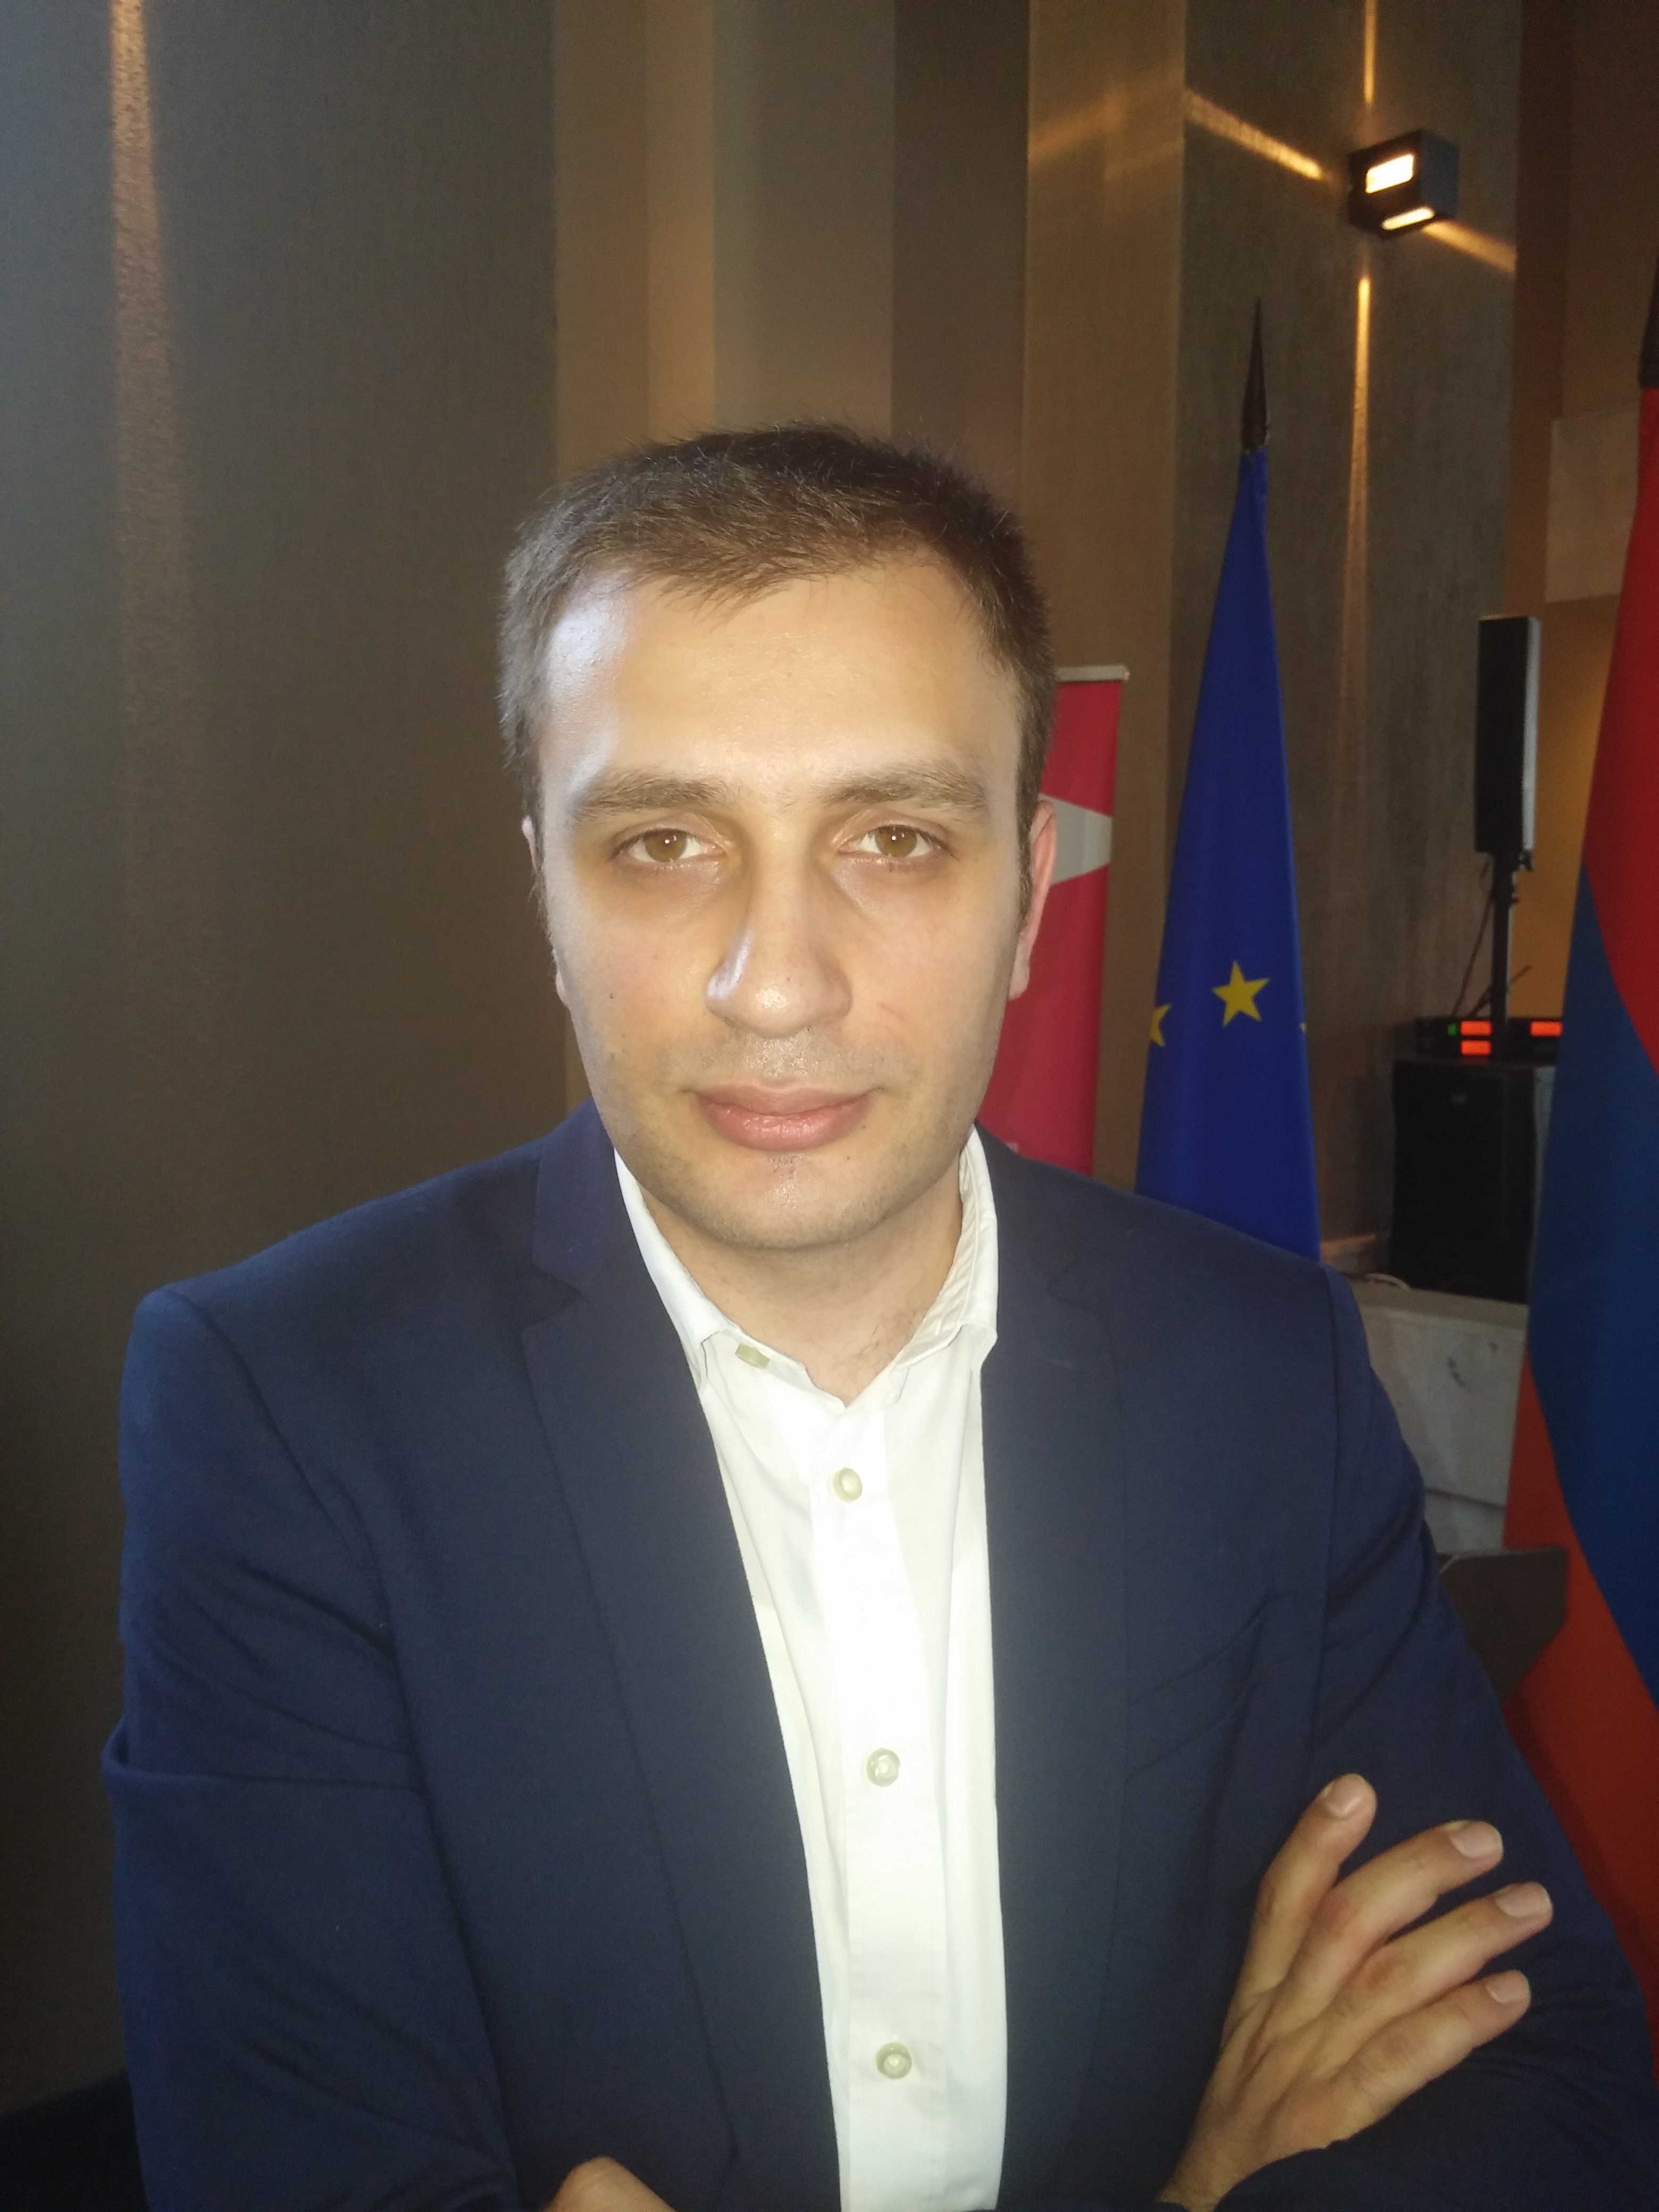 ՎԶԵԲ ձեռնարկատիրության աջակցման գրասենյակի ղեկավար. Դիվիդենտների հարկումը կարող է լուրջ խոչընդոտ հանդիսանալ դեպի Հայաստան օտարերկրյա ներդրումների ճանապարհին